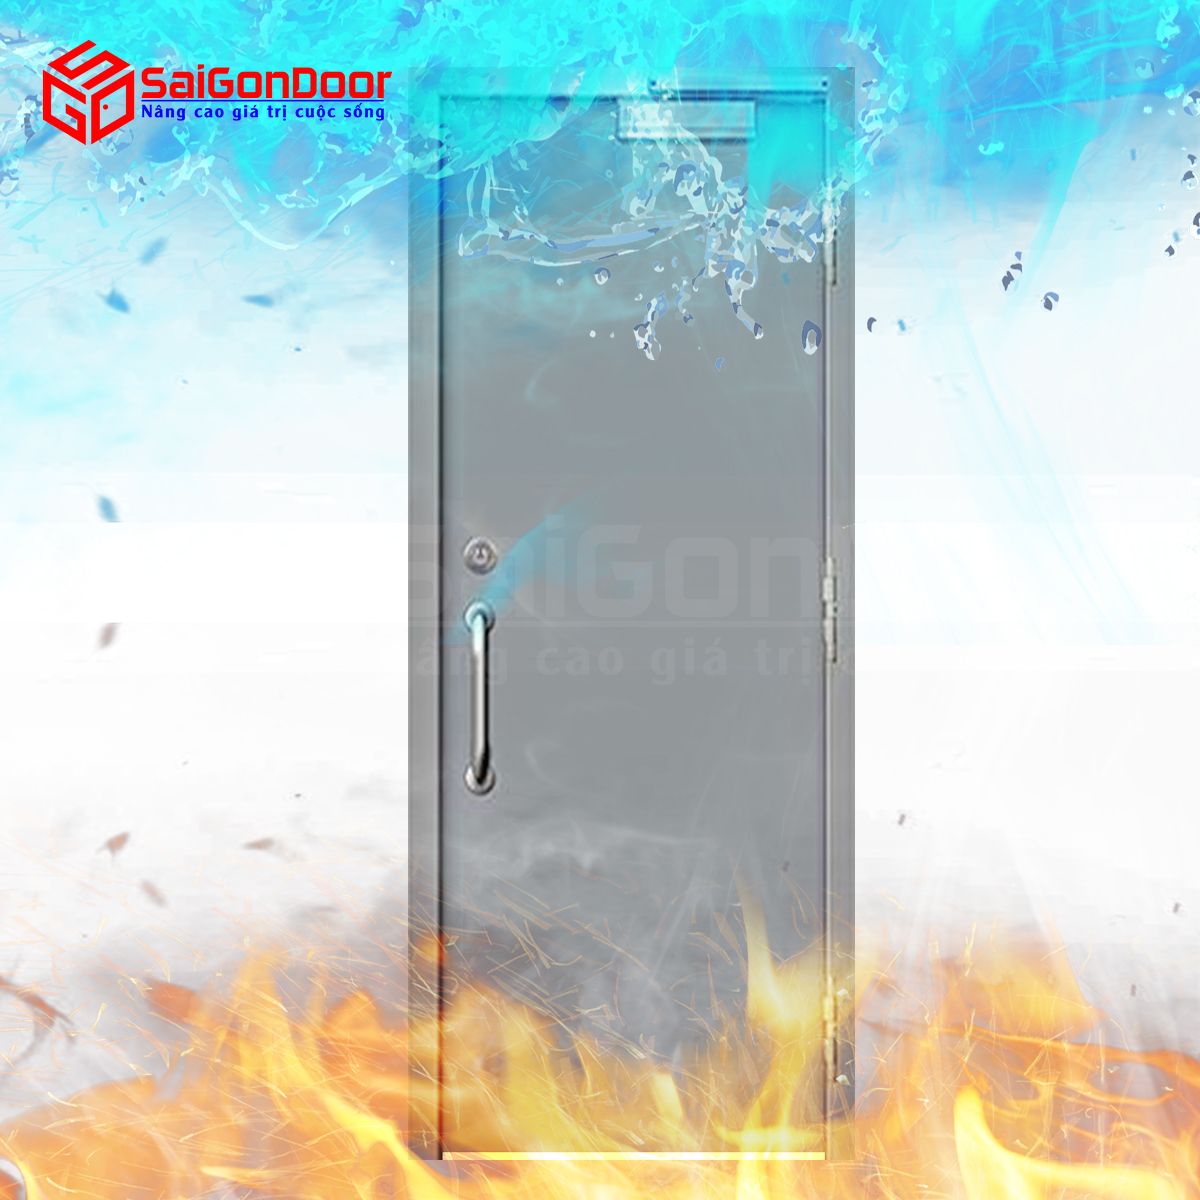 Các mẫu cửa thép chống cháy tại SaiGonDoor có mức giá cạnh tranh so với các loại cửa khác